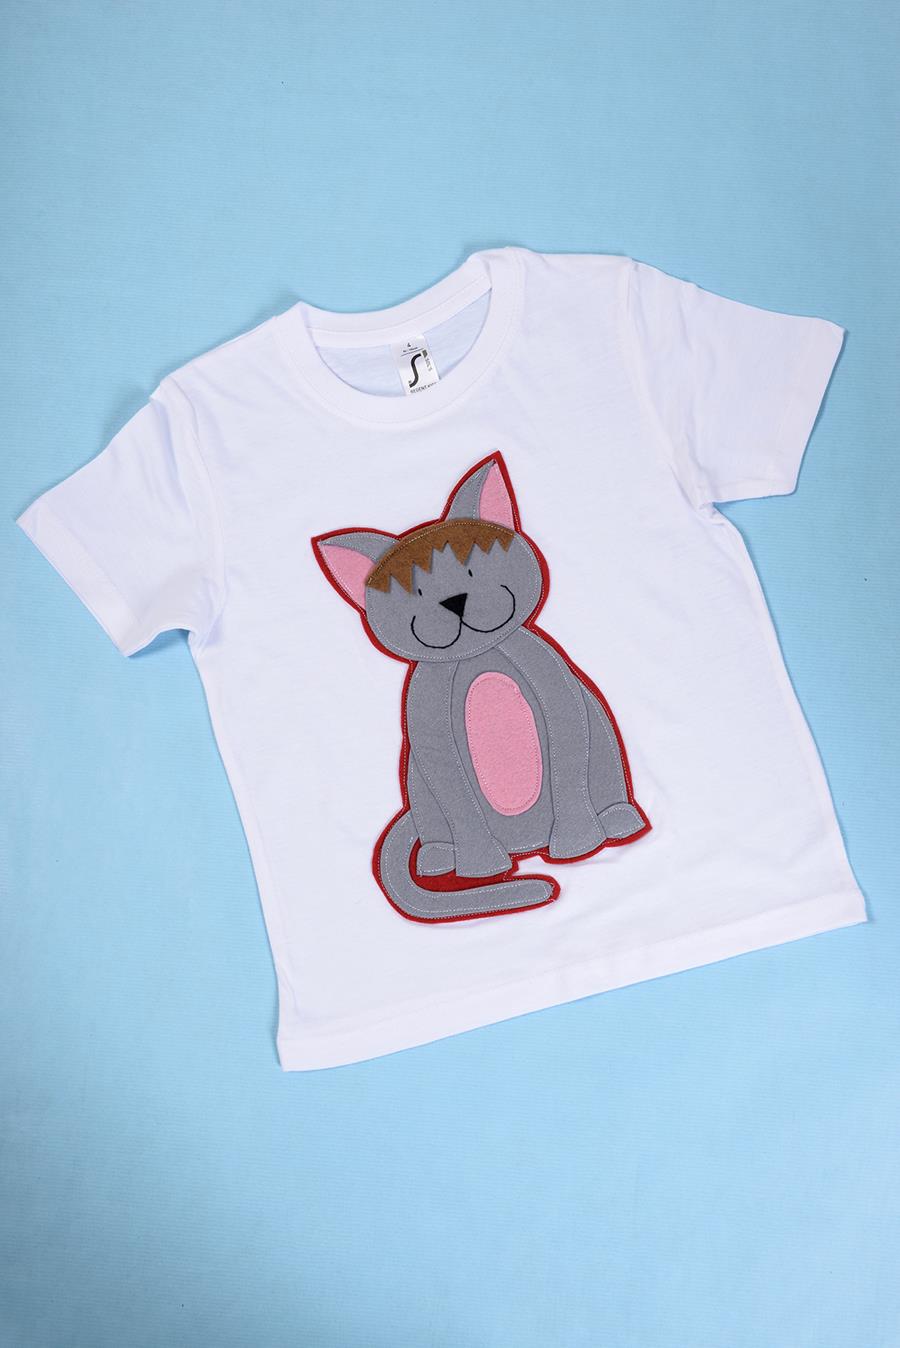 Camiseta niño/a Gato | 00035